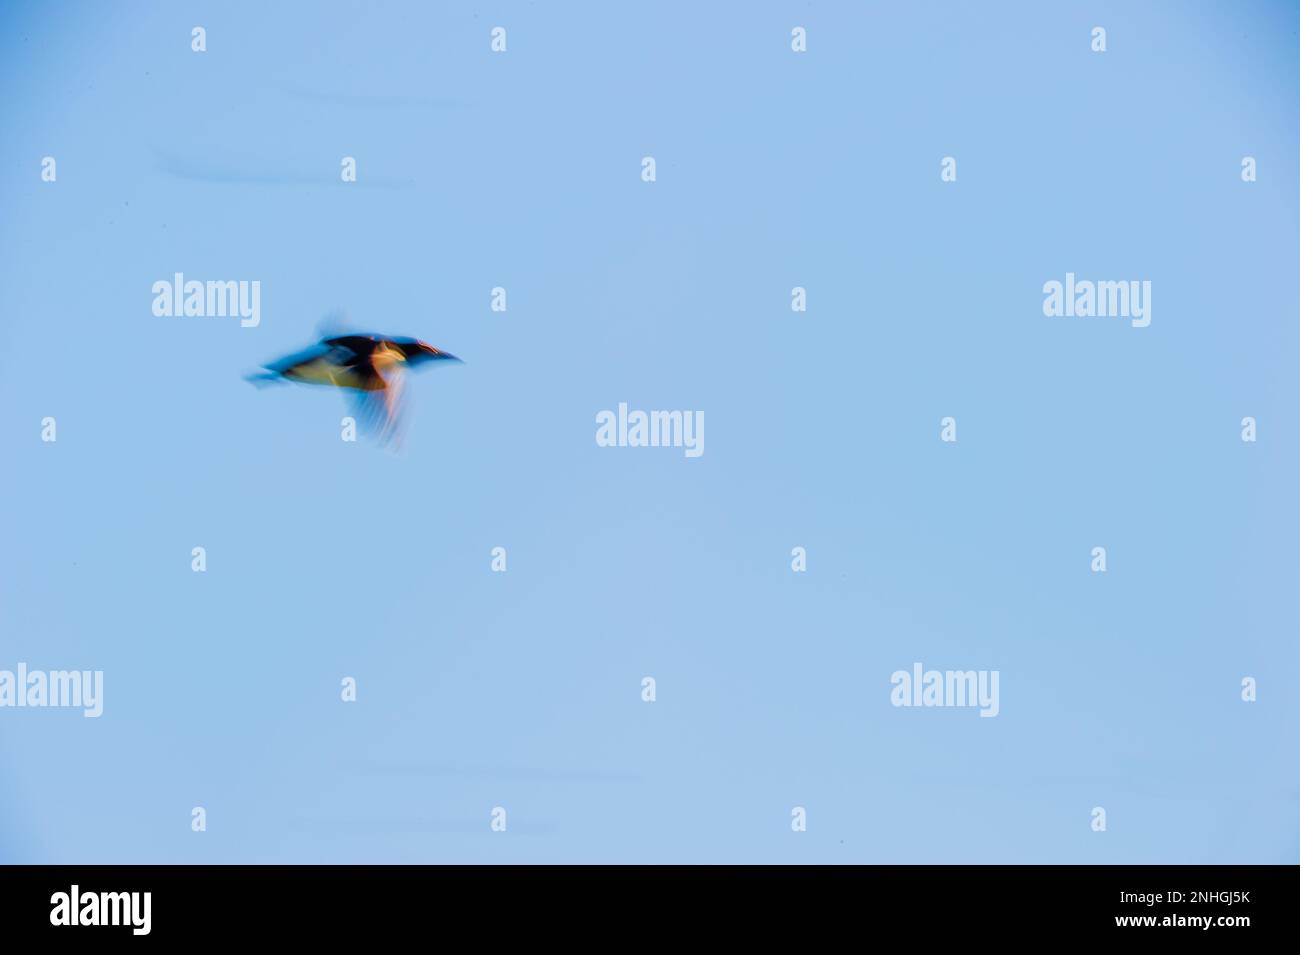 Single bird using motion blur flying under the ledges of Kapp Fanshawe, Norway Stock Photo